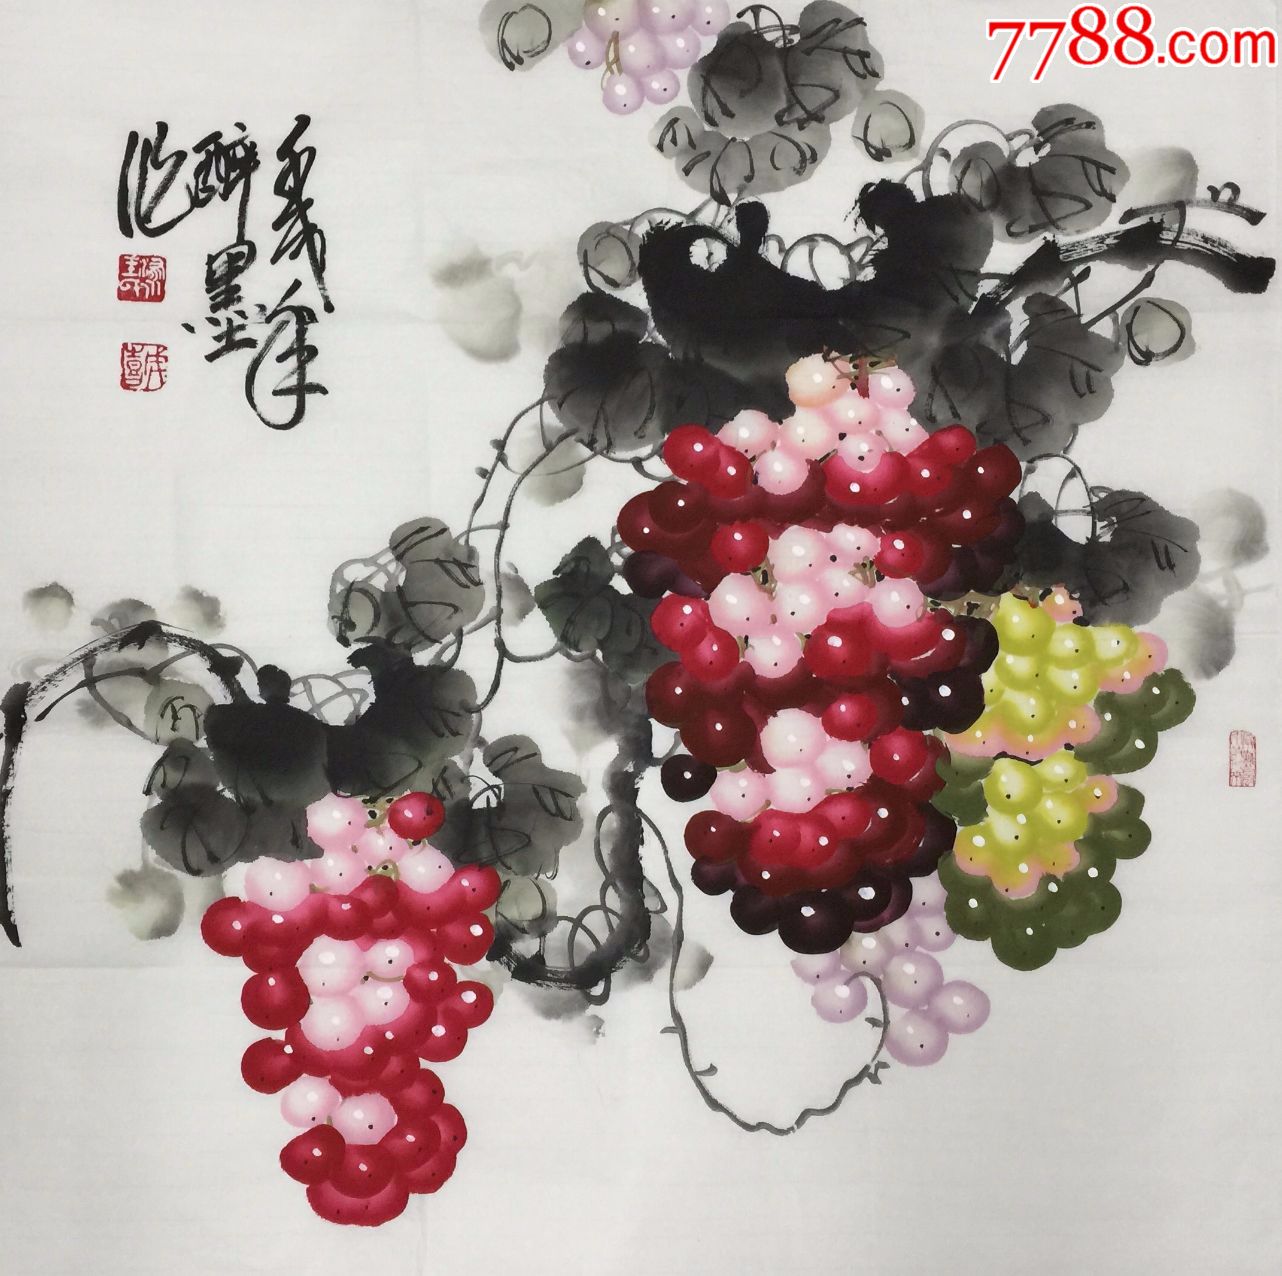 【王成喜】中国当代著名画家,中美协理事,手绘四尺斗方葡萄